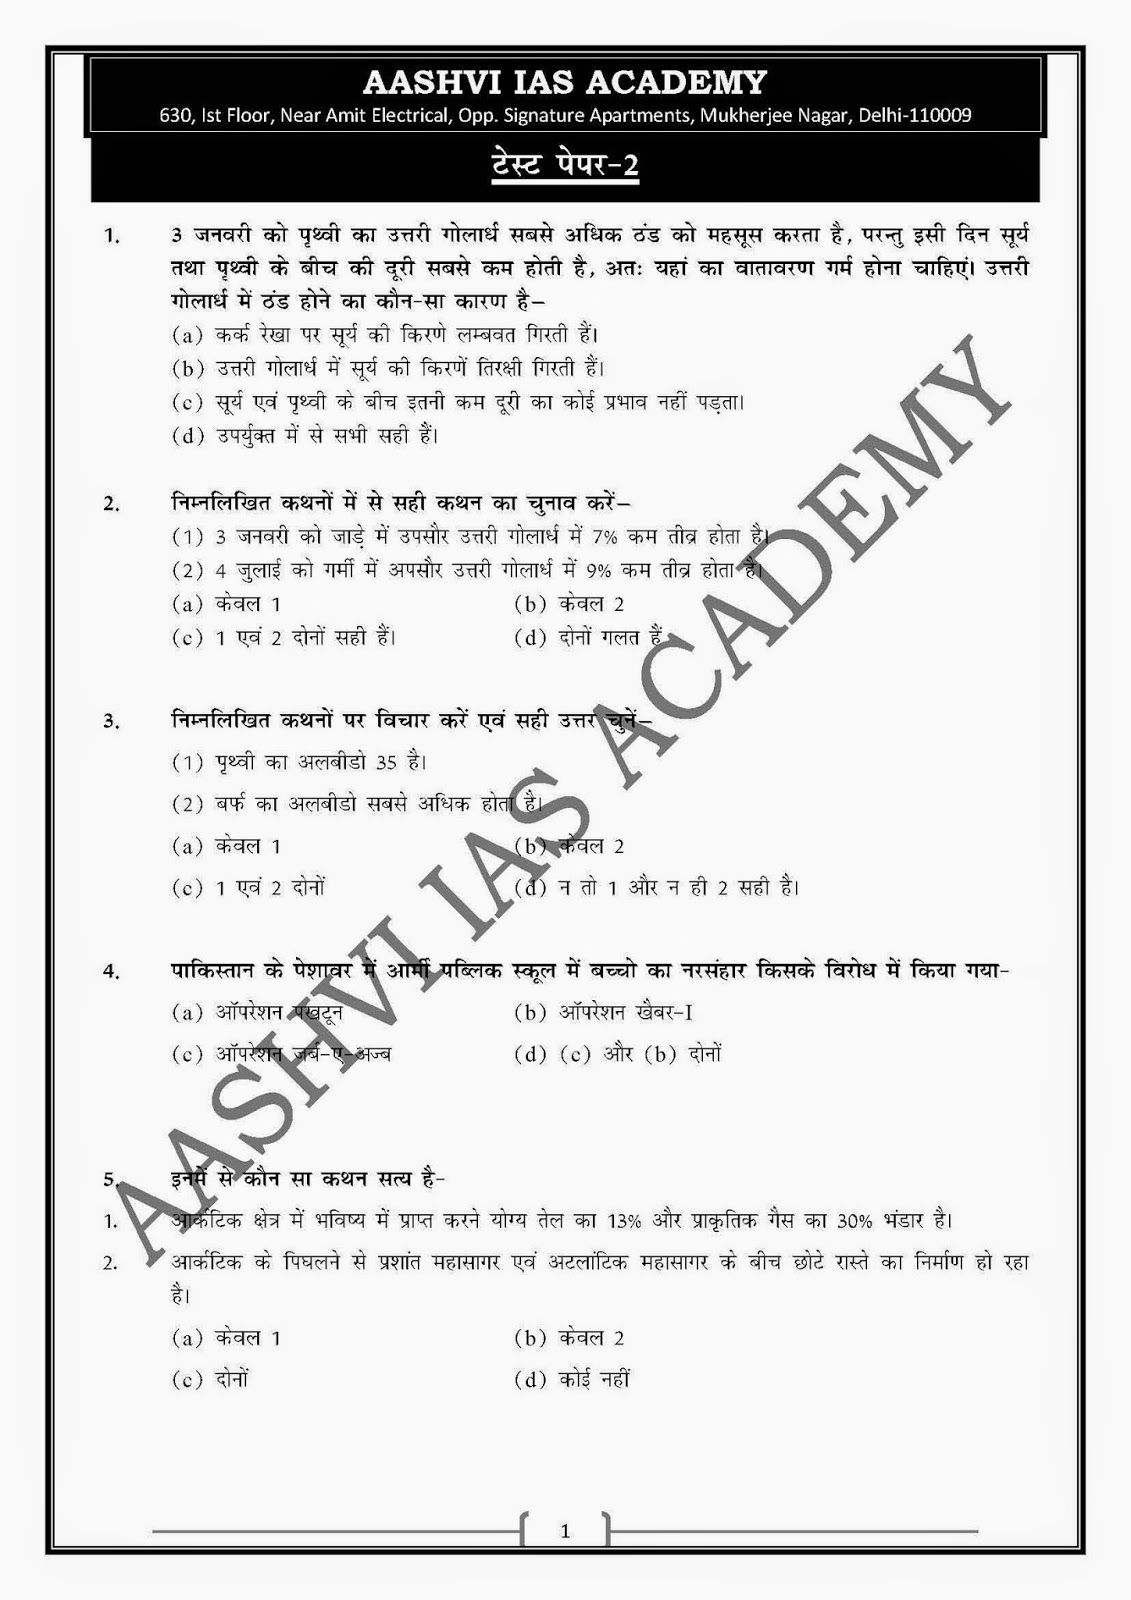 model answer civil services221 mains gs paper 21: AASHVI IAS